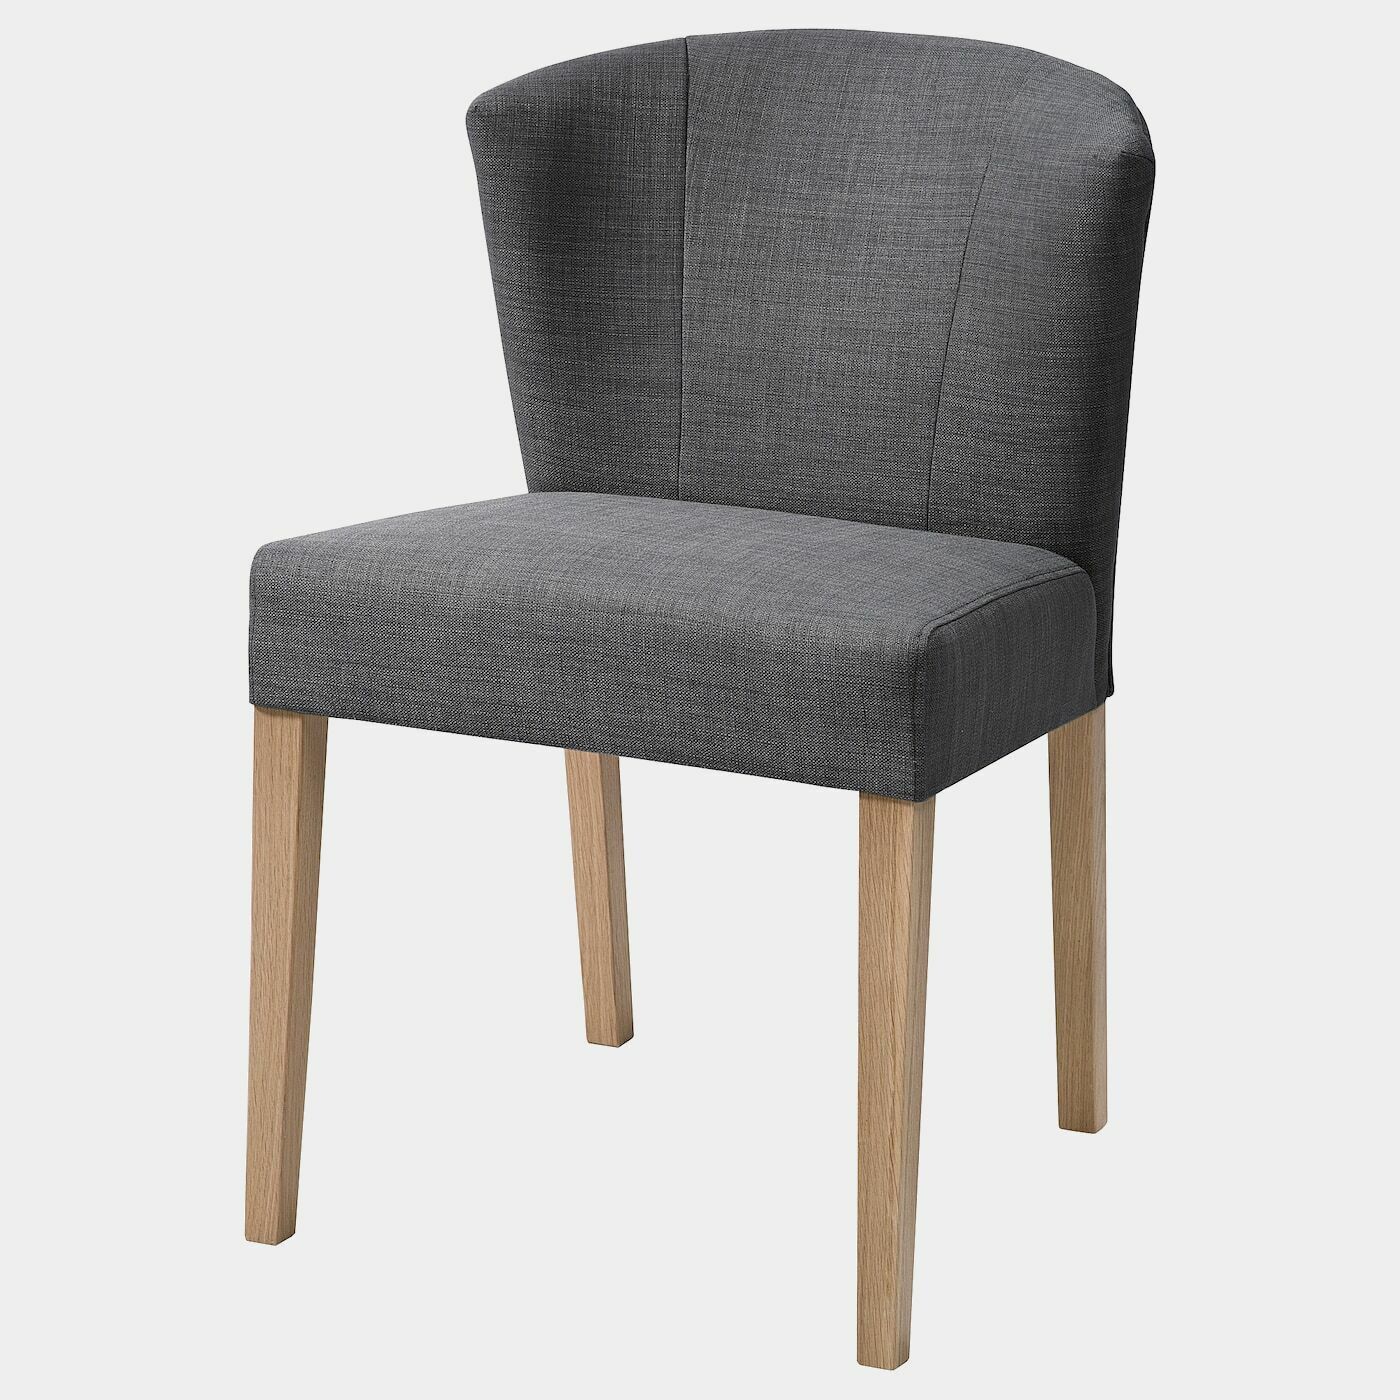 KARLERIK Stuhl  - Esszimmerstühle - Möbel Ideen für dein Zuhause von Home Trends. Möbel Trends von Social Media Influencer für dein Skandi Zuhause.